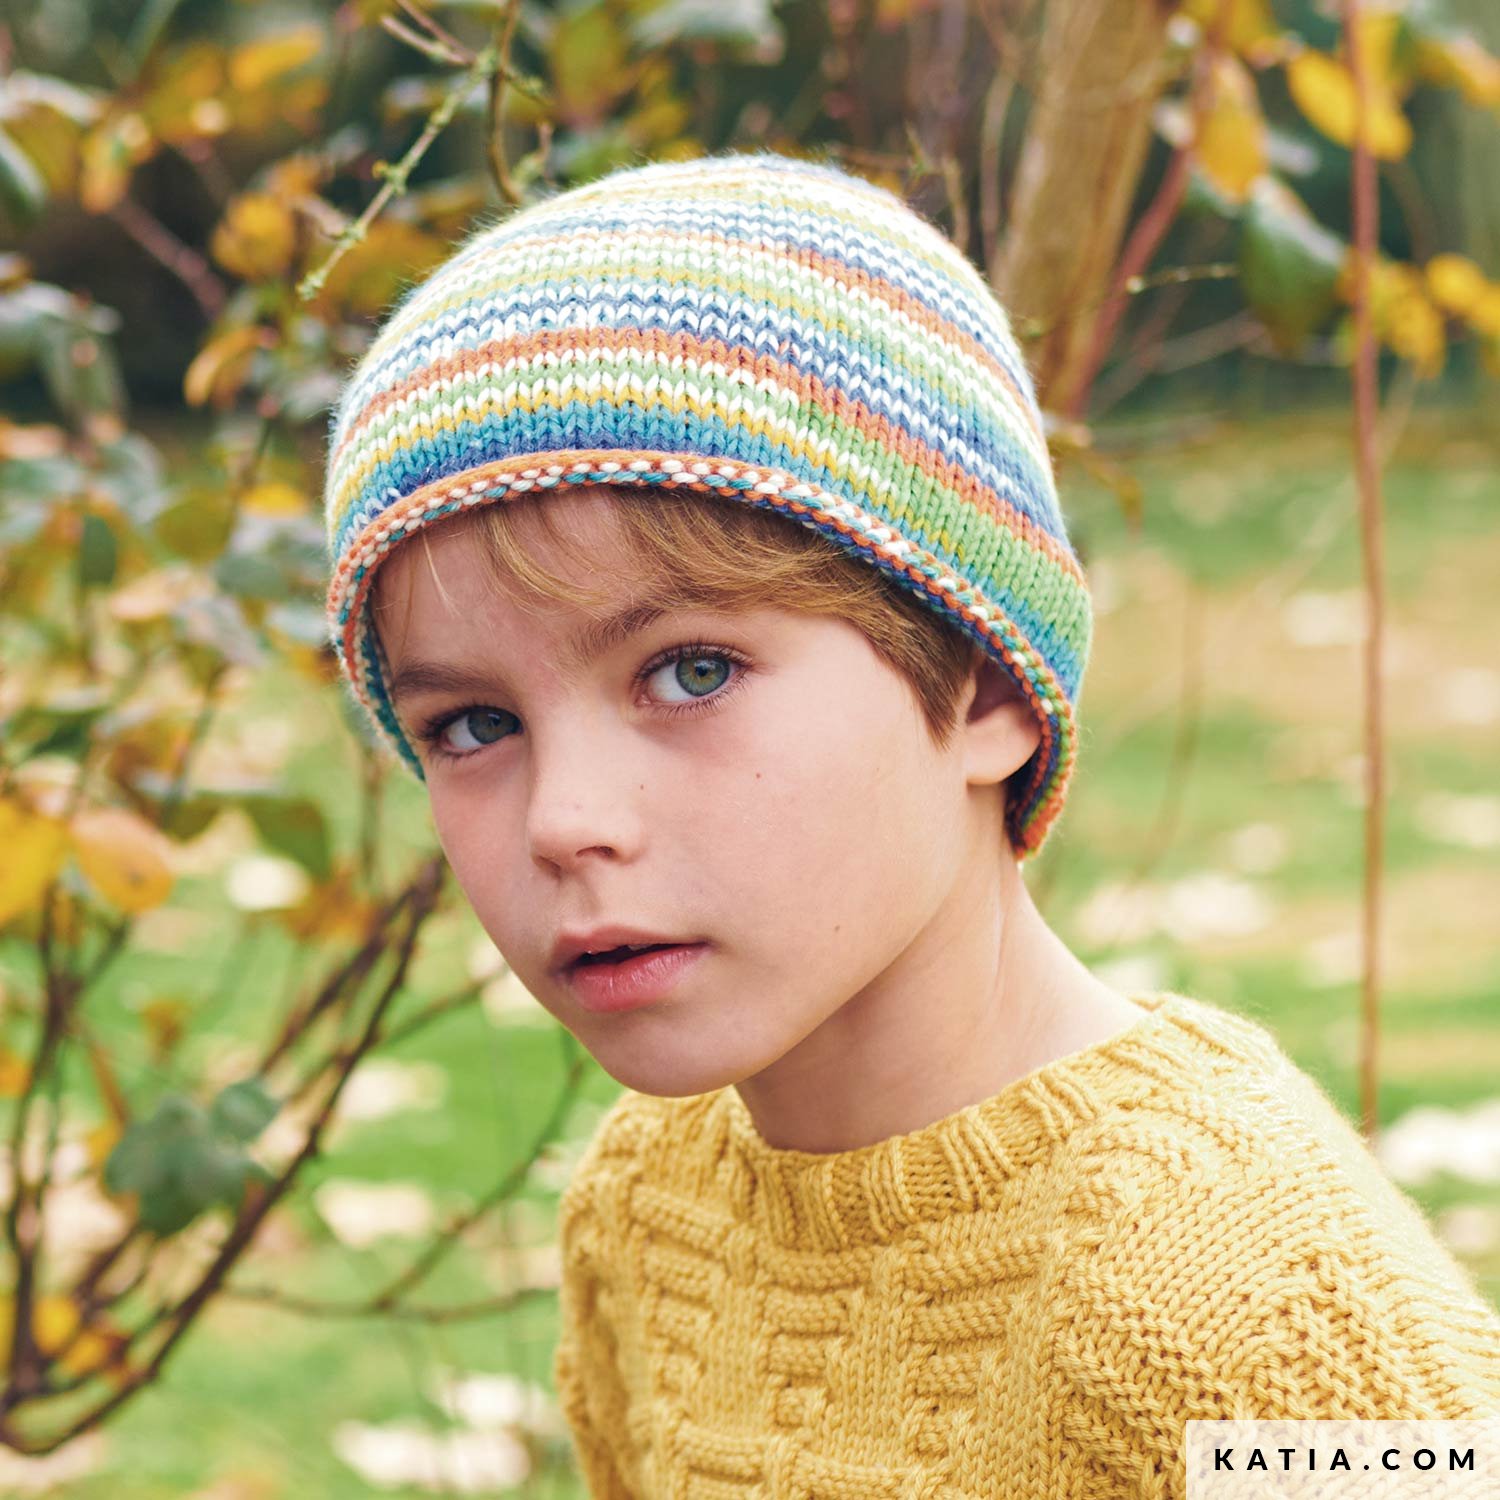 https://www.katia.com/files/mod/6280/patron-tricoter-tricot-crochet-enfant-bonnet-automne-hiver-katia-6280-22-g.jpg